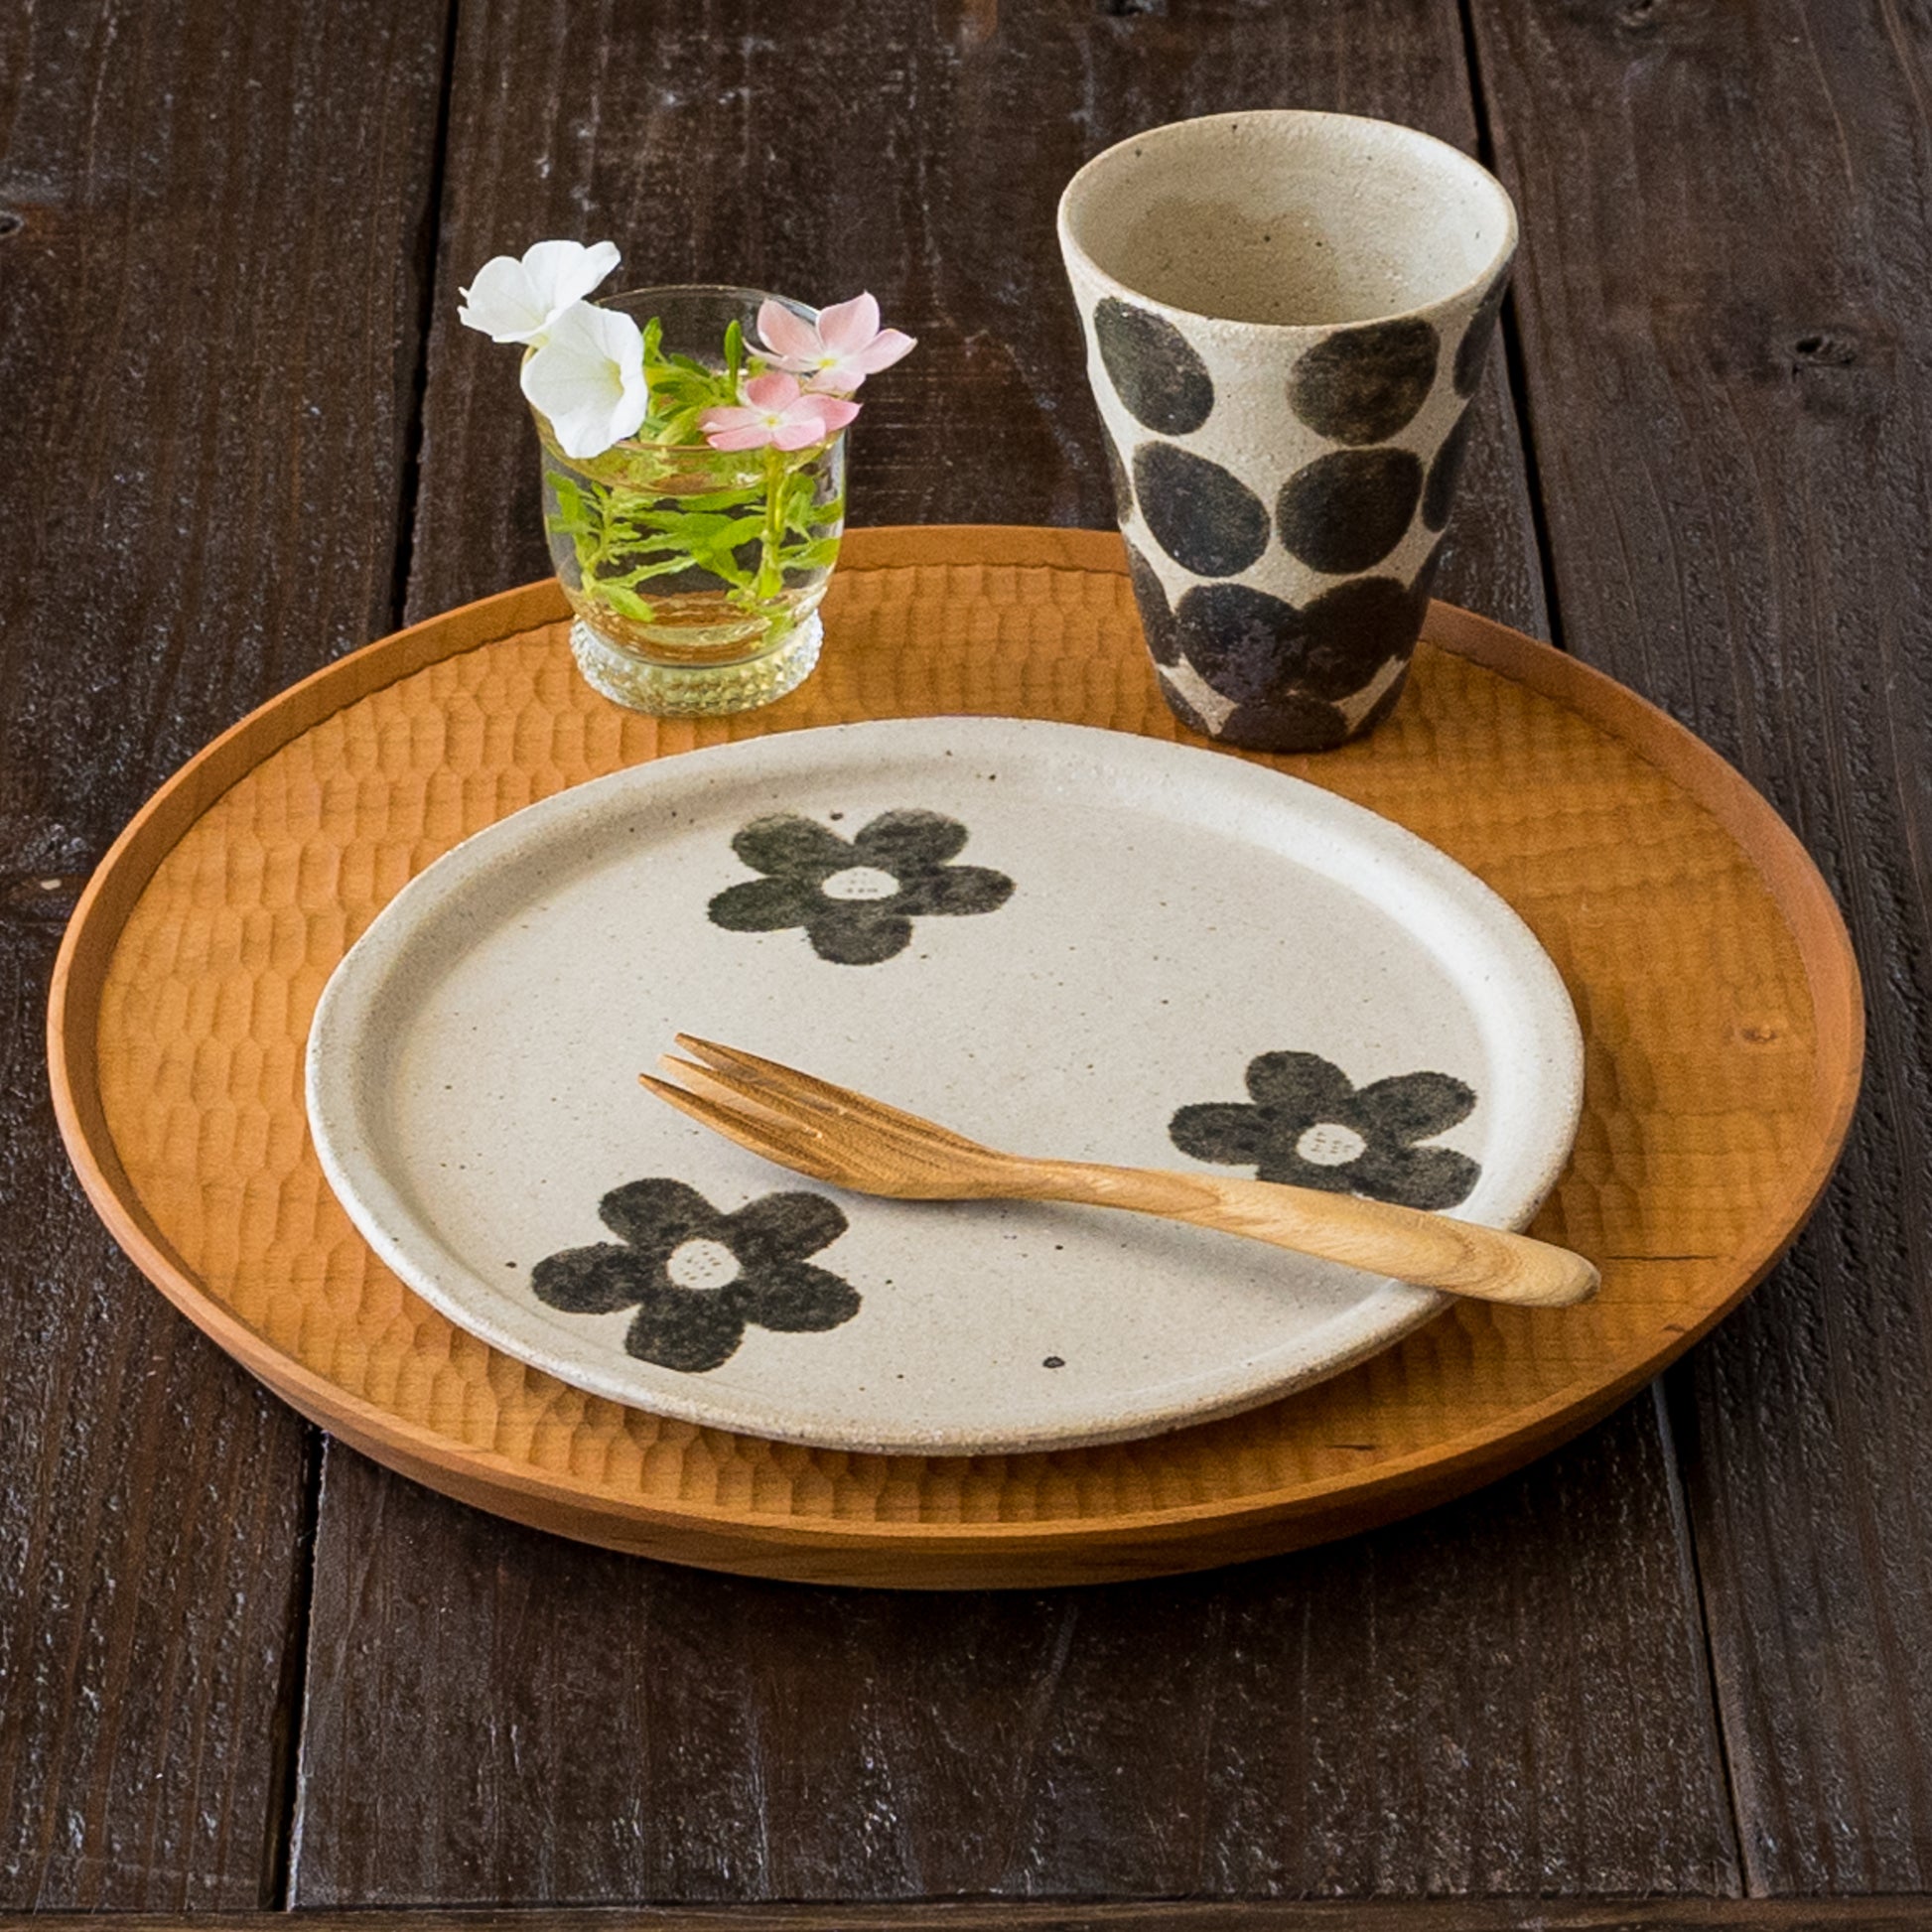 朝食やランチがもっと楽しくなる岡村朝子さんのフリーカップと丸皿